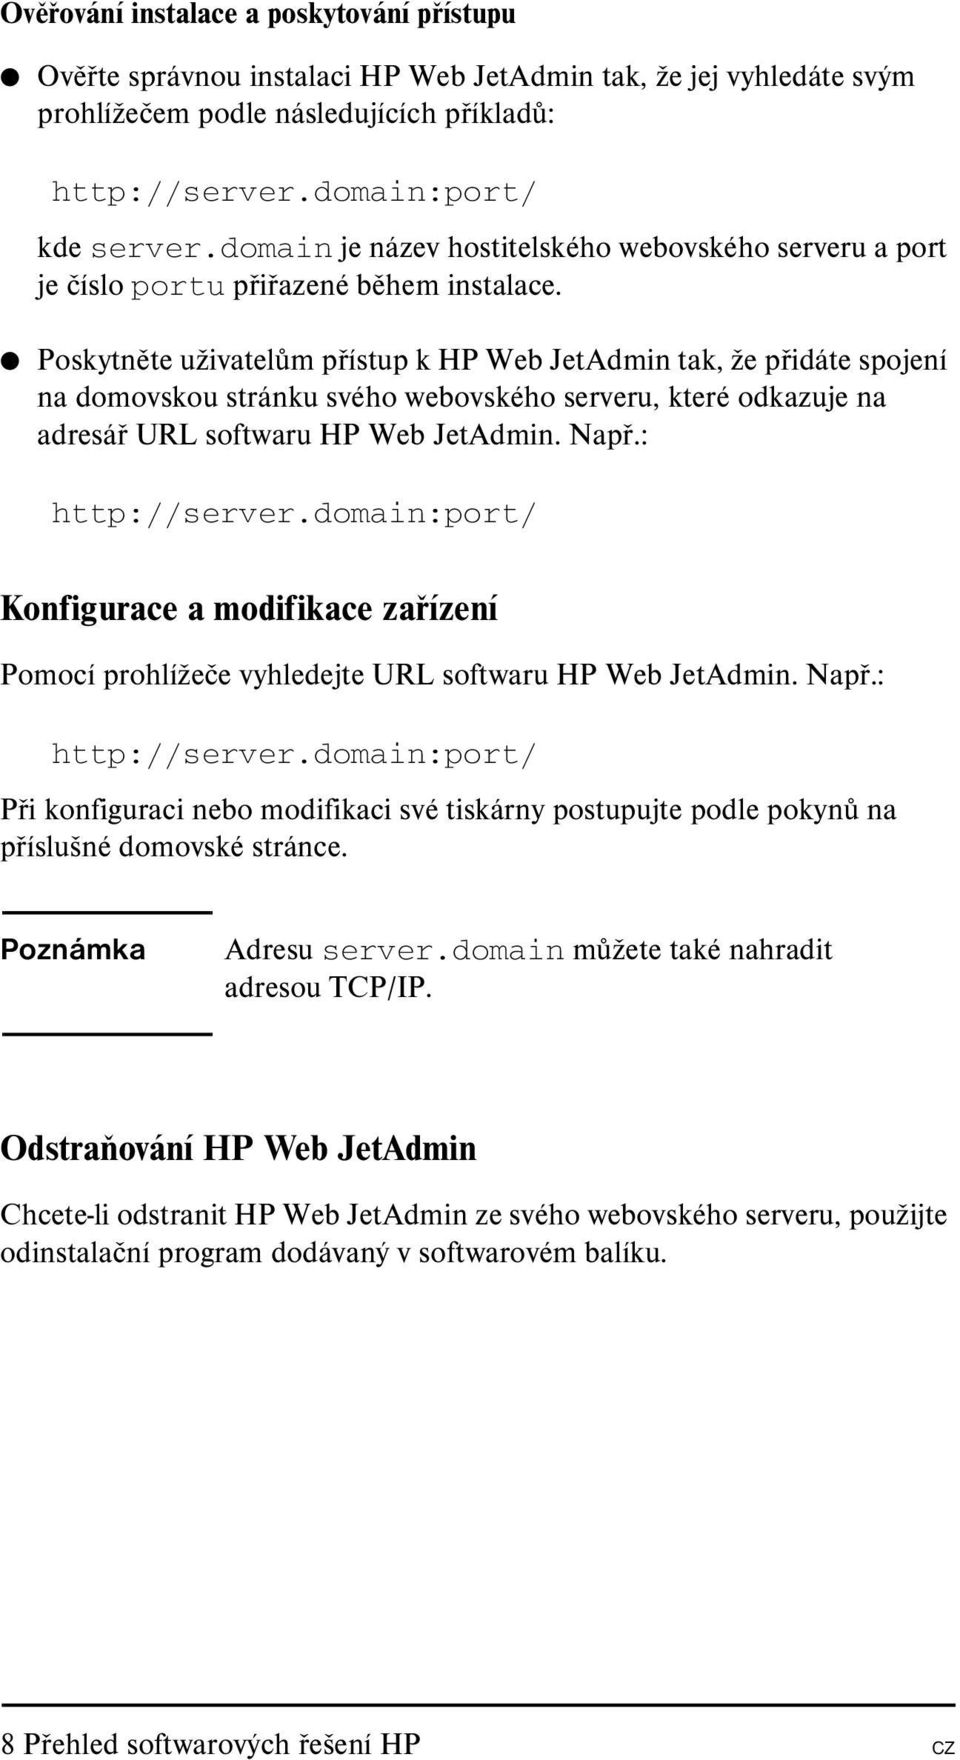 Poskytněte uživatelům přístup k HP Web JetAdmin tak, že přidáte spojení na domovskou stránku svého webovského serveru, které odkazuje na adresář URL softwaru HP Web JetAdmin. Např.: http://server.